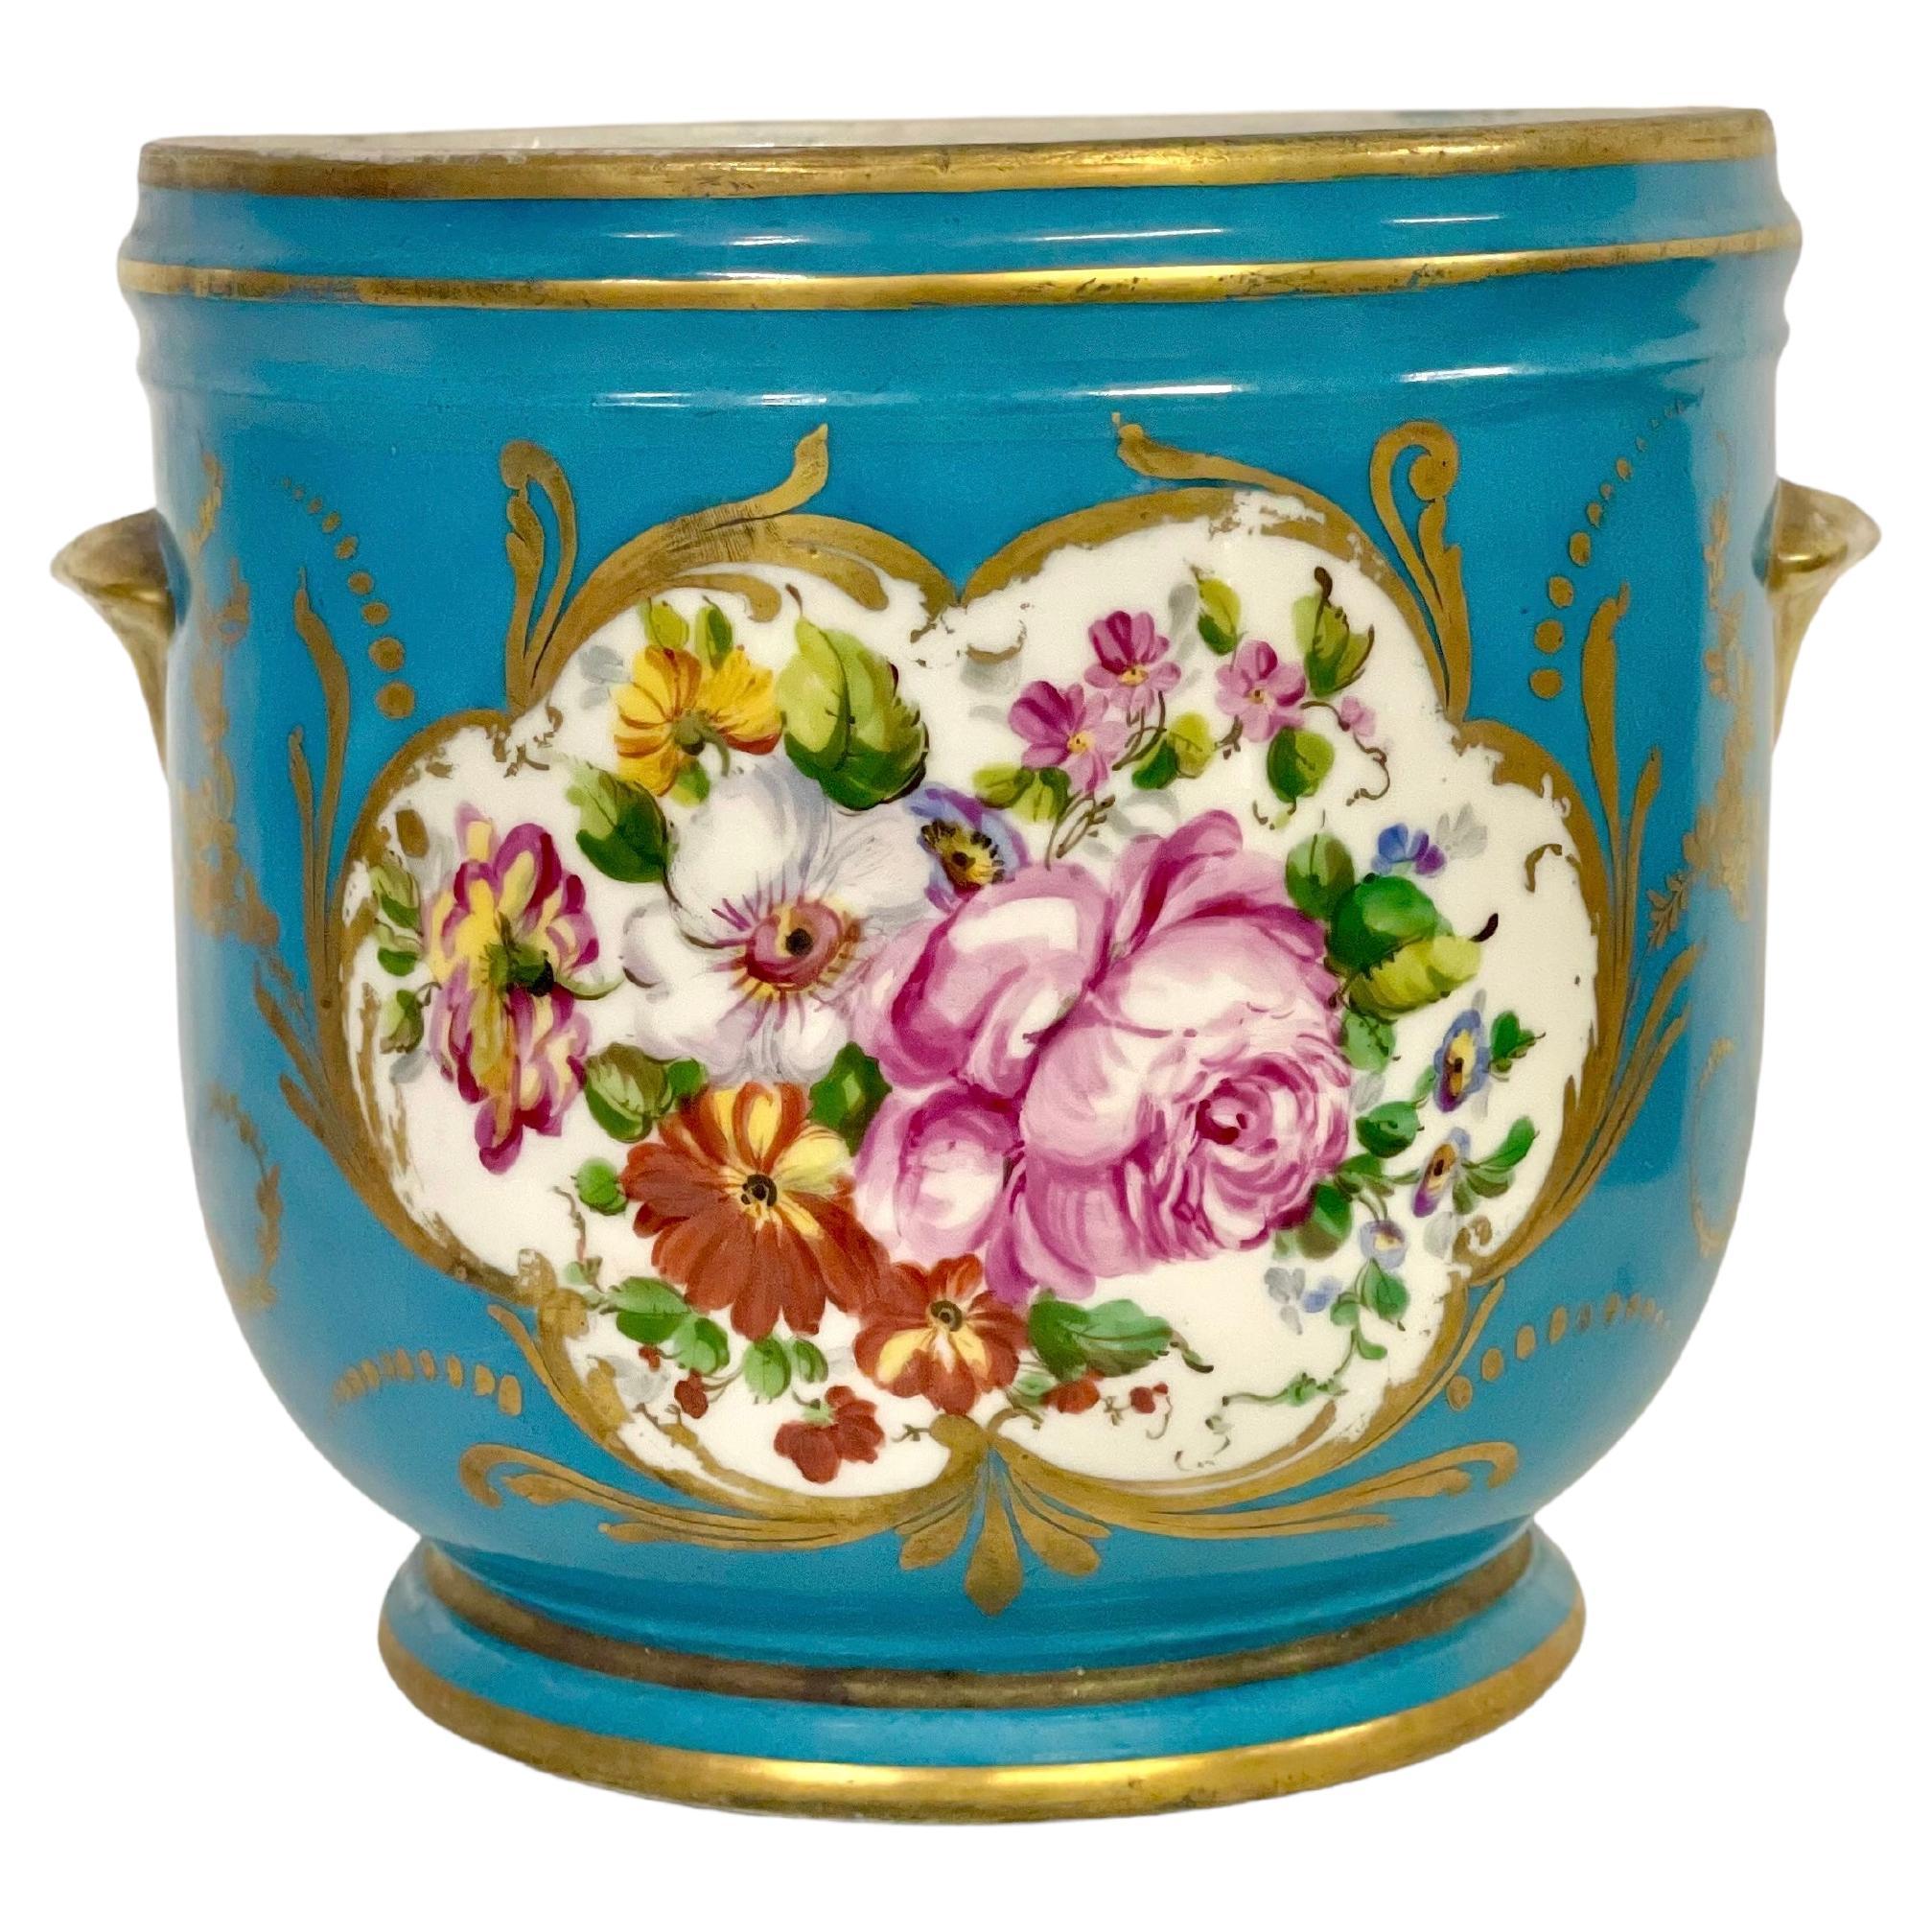 Pot à Cache en porcelaine de Limoges du 19ème siècle dans le style de Sèvres